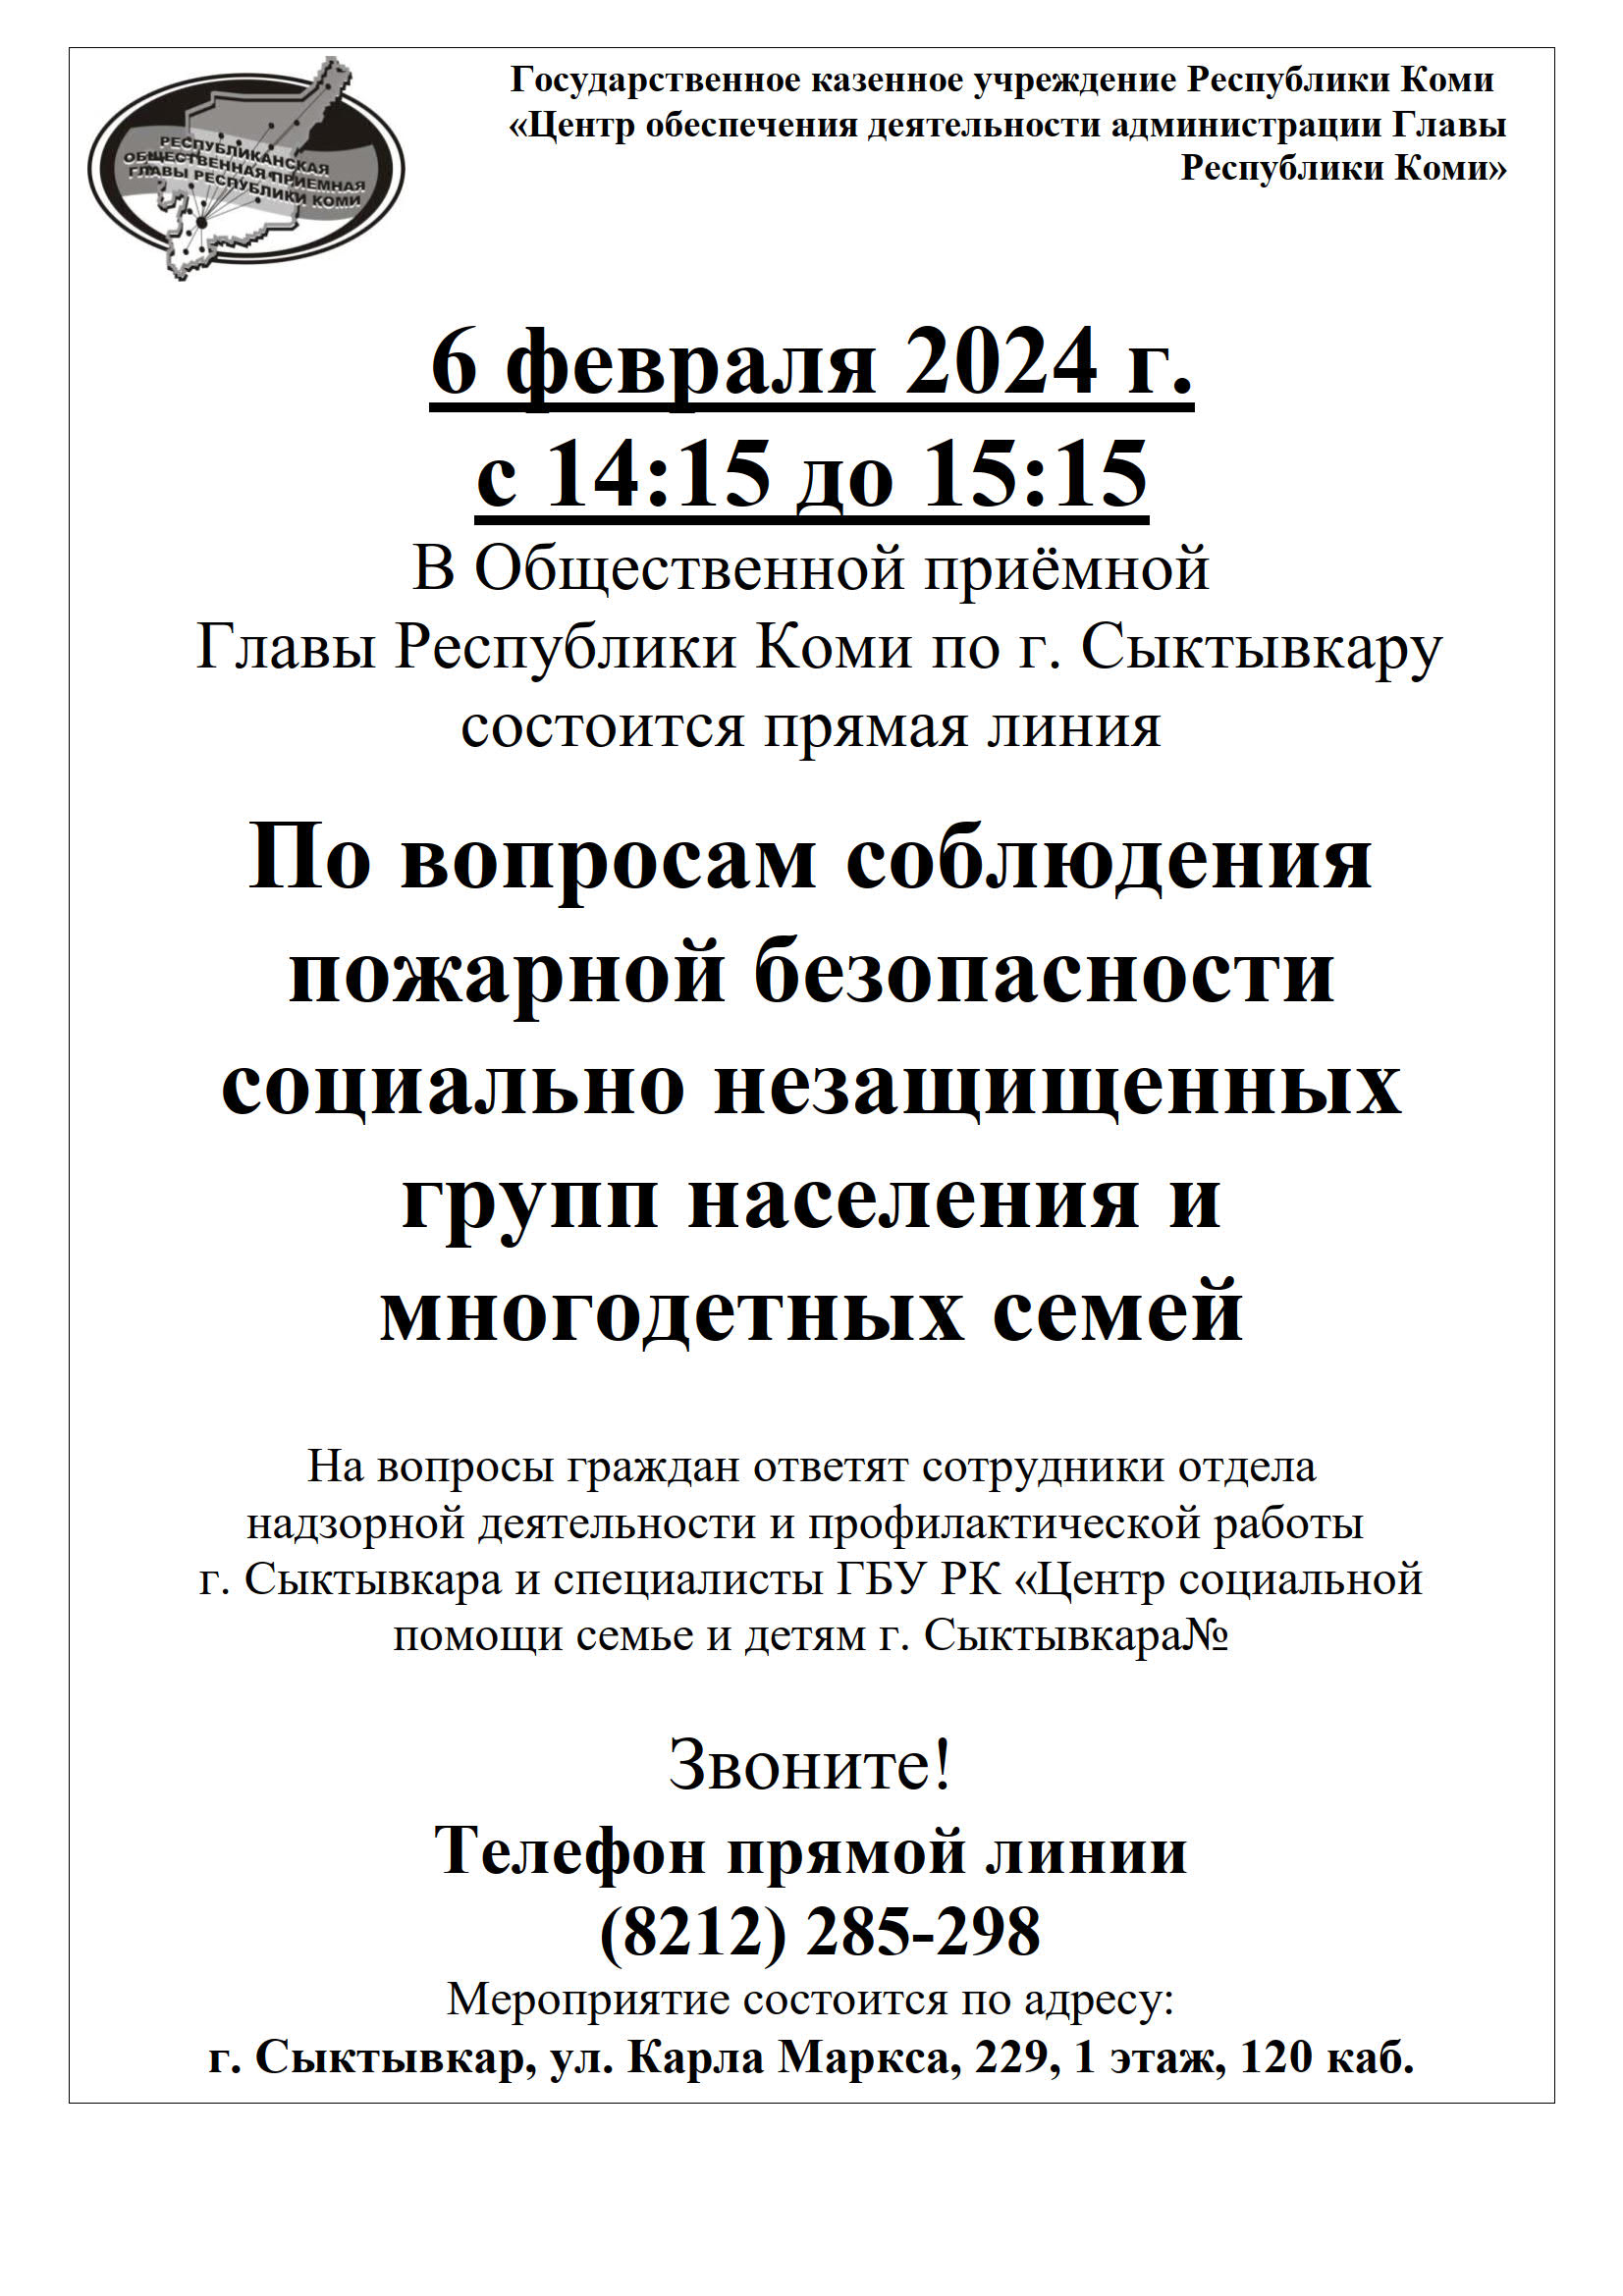 6 февраля 2024 г. с 14:15 до 15:15 В Общественной приёмной Главы Республики Коми по г. Сыктывкару состоится прямая линия.